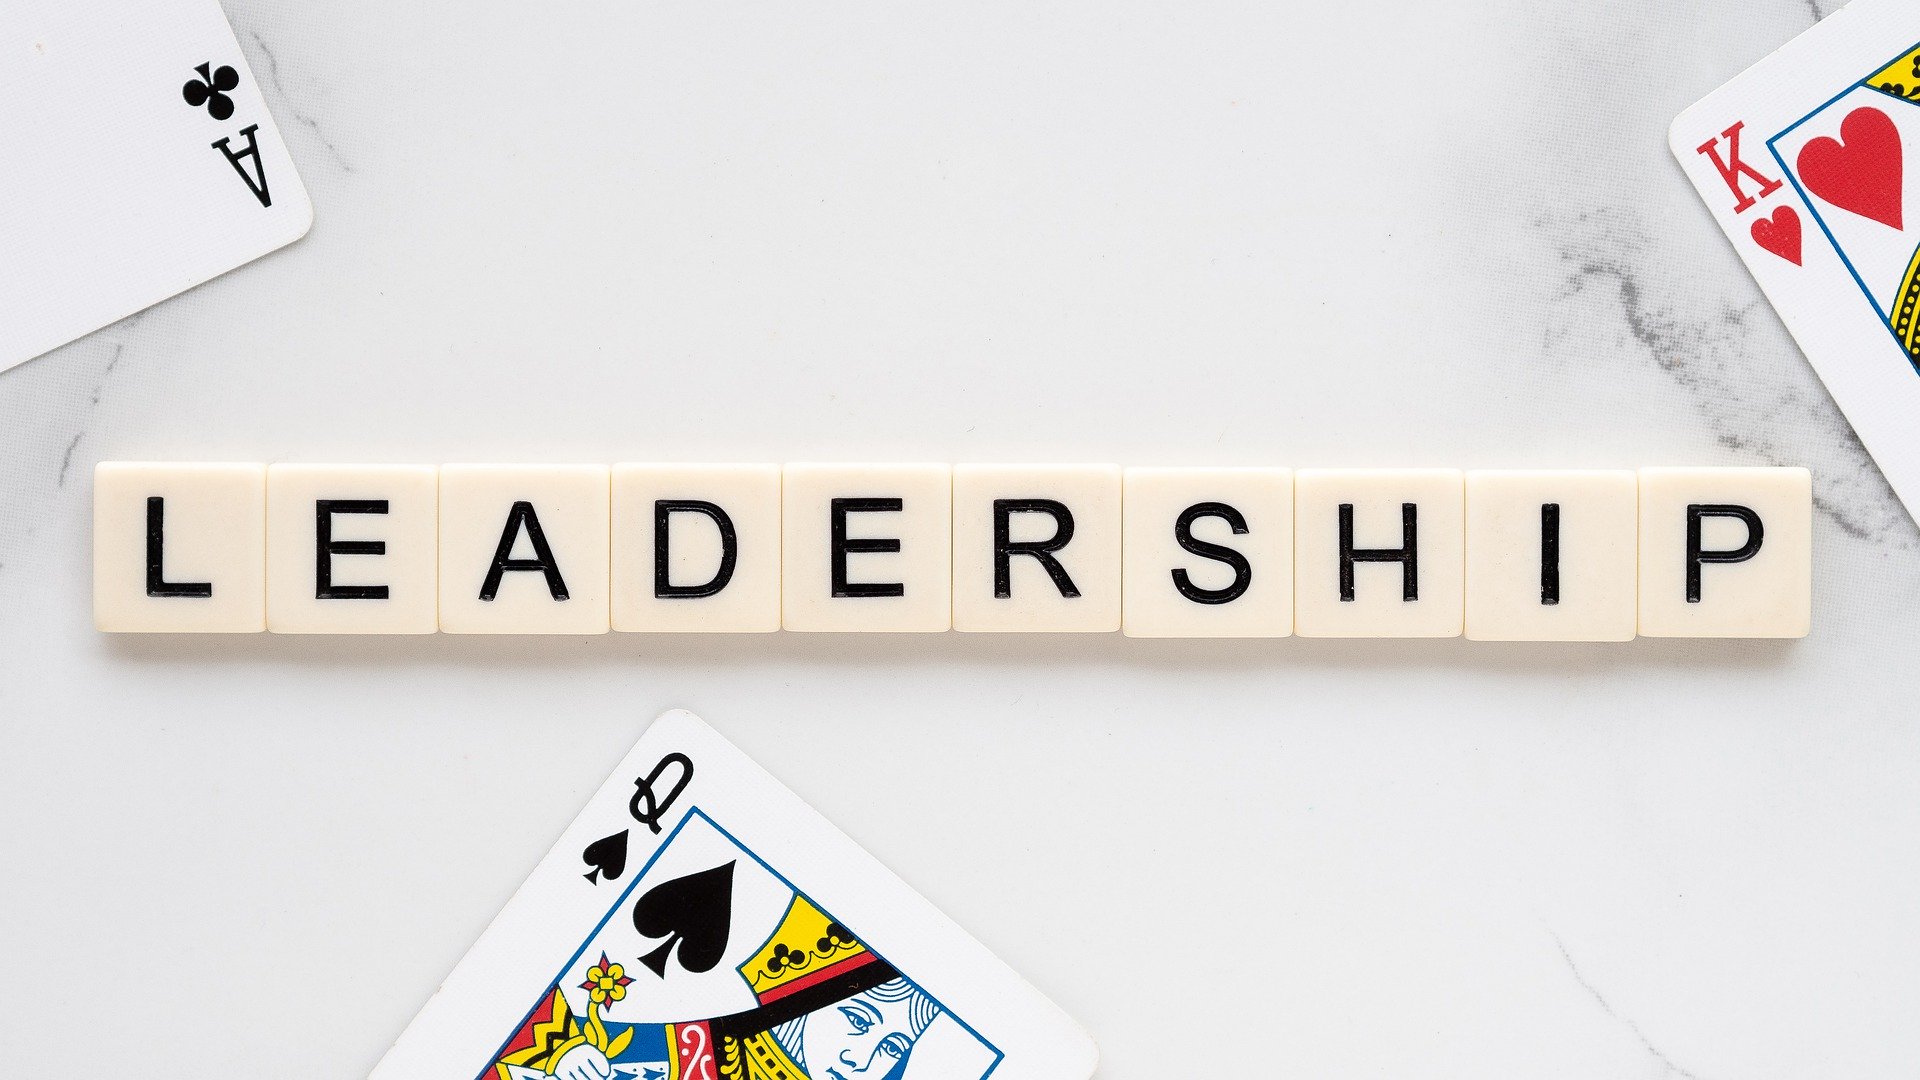 letras juntas formando a palavra "leadership" (lidernaça, em português). Assim, representa a ideia central do texto, que aborda a diferença entre liderança vertical e liderança horizontal.